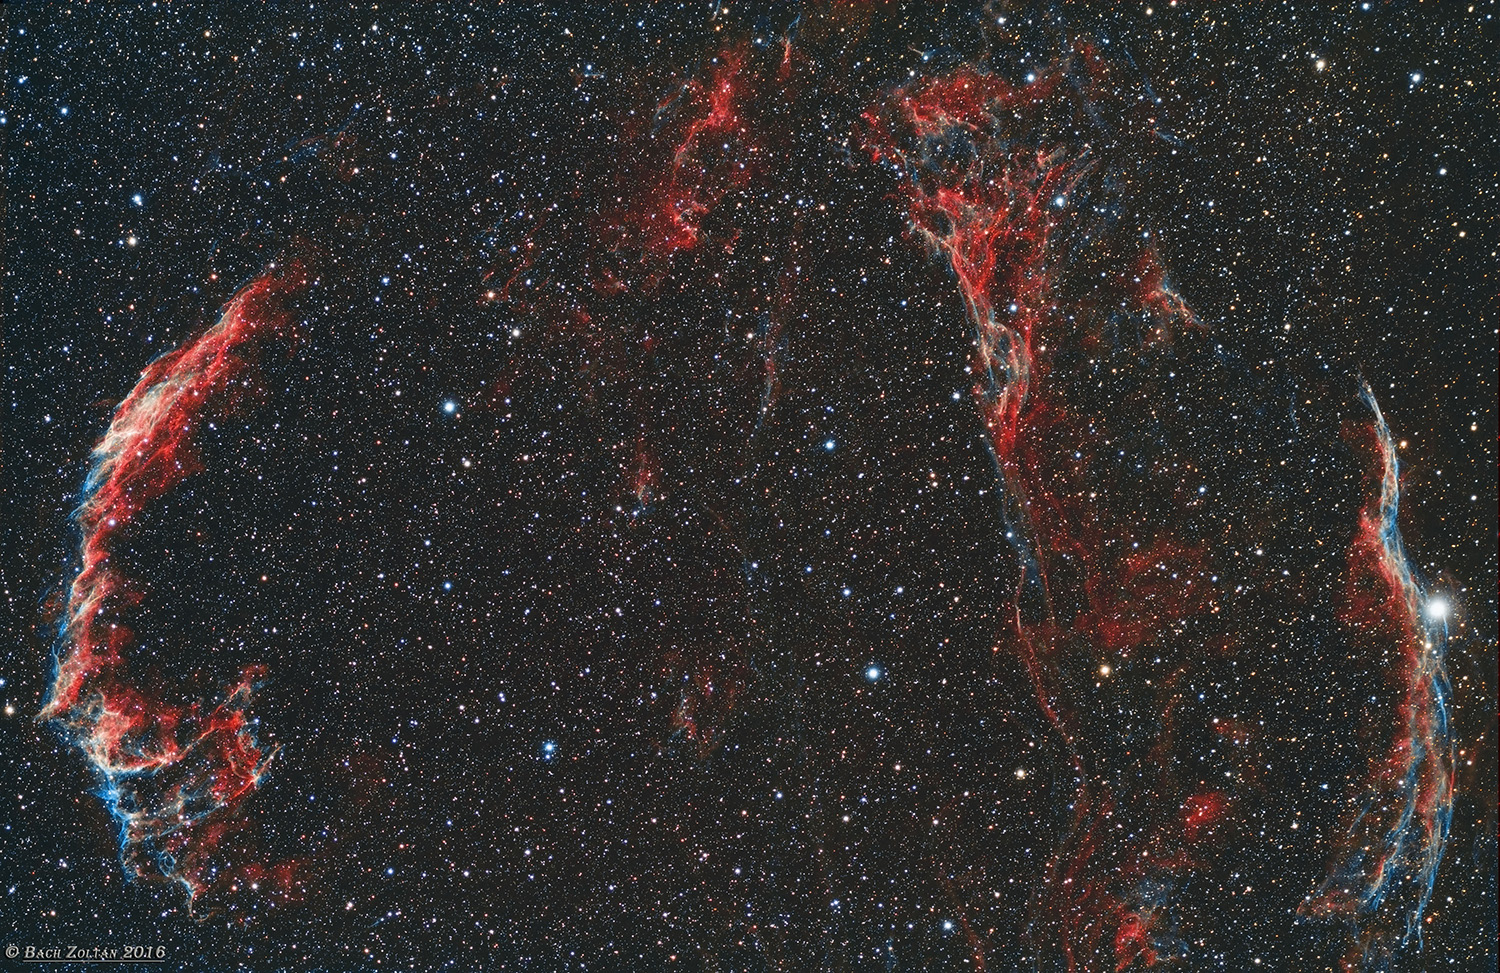 Veil Nebula region